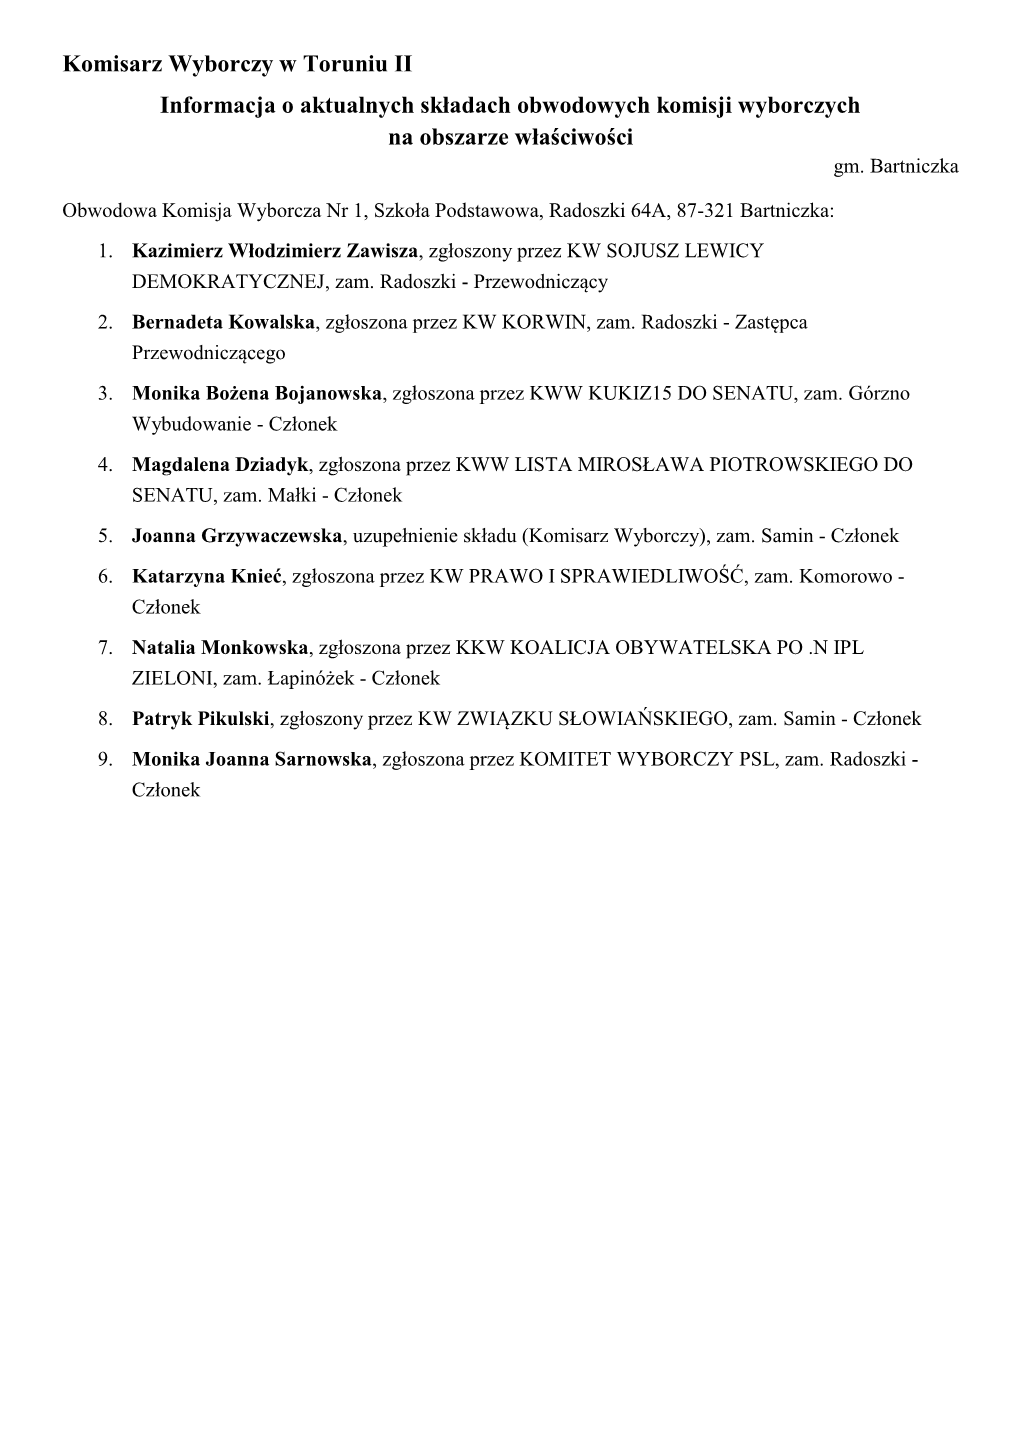 Komisarz Wyborczy W Toruniu II Informacja O Aktualnych Składach Obwodowych Komisji Wyborczych Na Obszarze Właściwości Gm